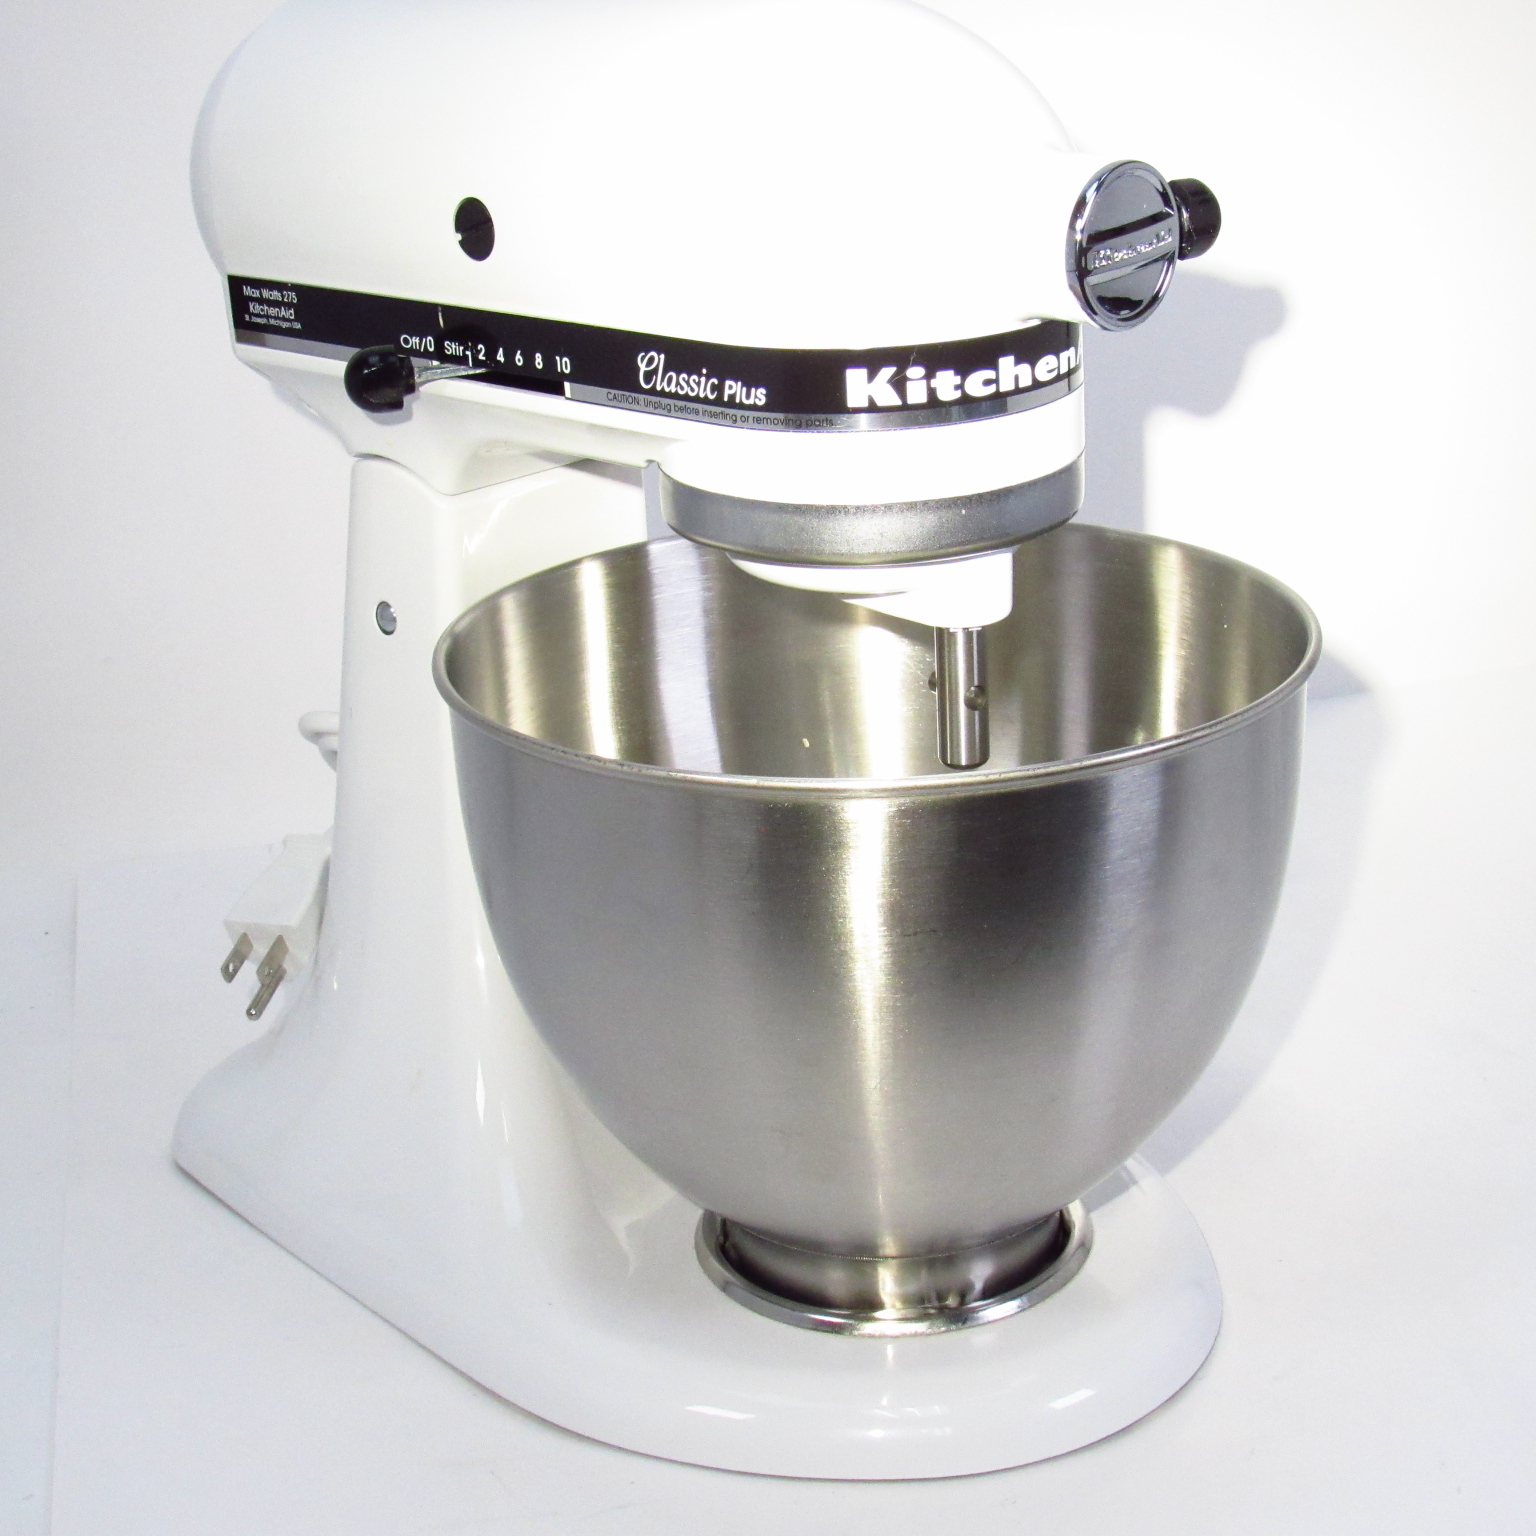 KitchenAid Classic Plus KSM75WH 4.5-Quart Tilt-Head Stand Mixer - White